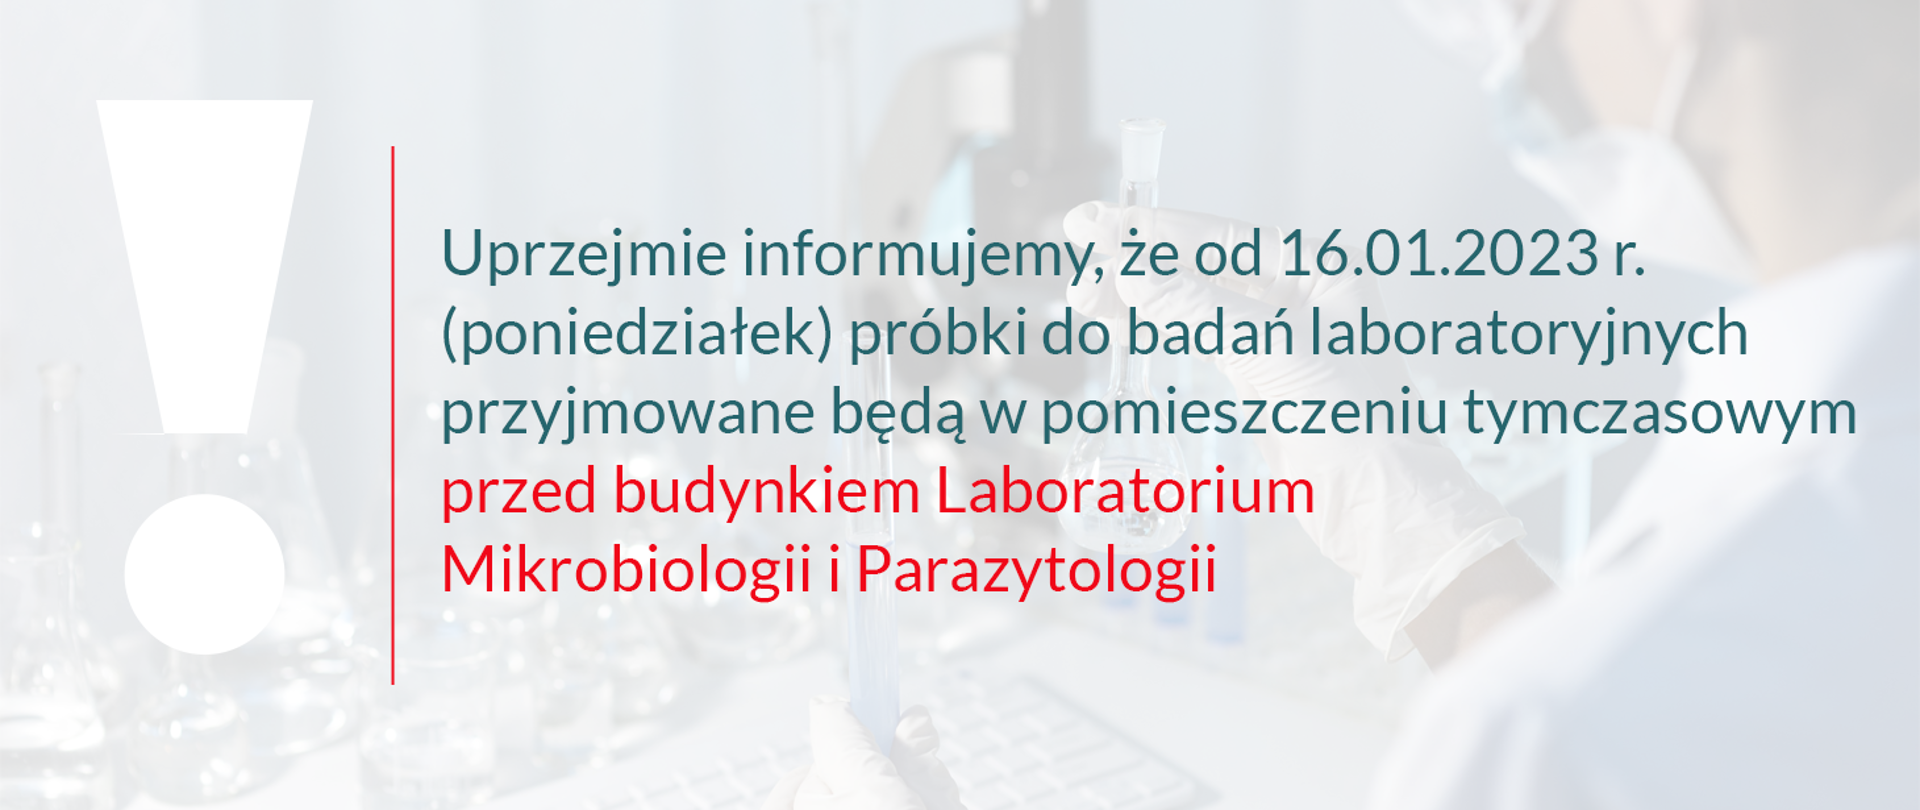 Uprzejmie informujemy, że od 16.01.2023 (poniedziałek) próbki do badań laboratoryjnych przyjmowane będą w pomieszczeniu tymczasowym przed budynkiem Laboratorium Mikrobiologii i Parazytologii.